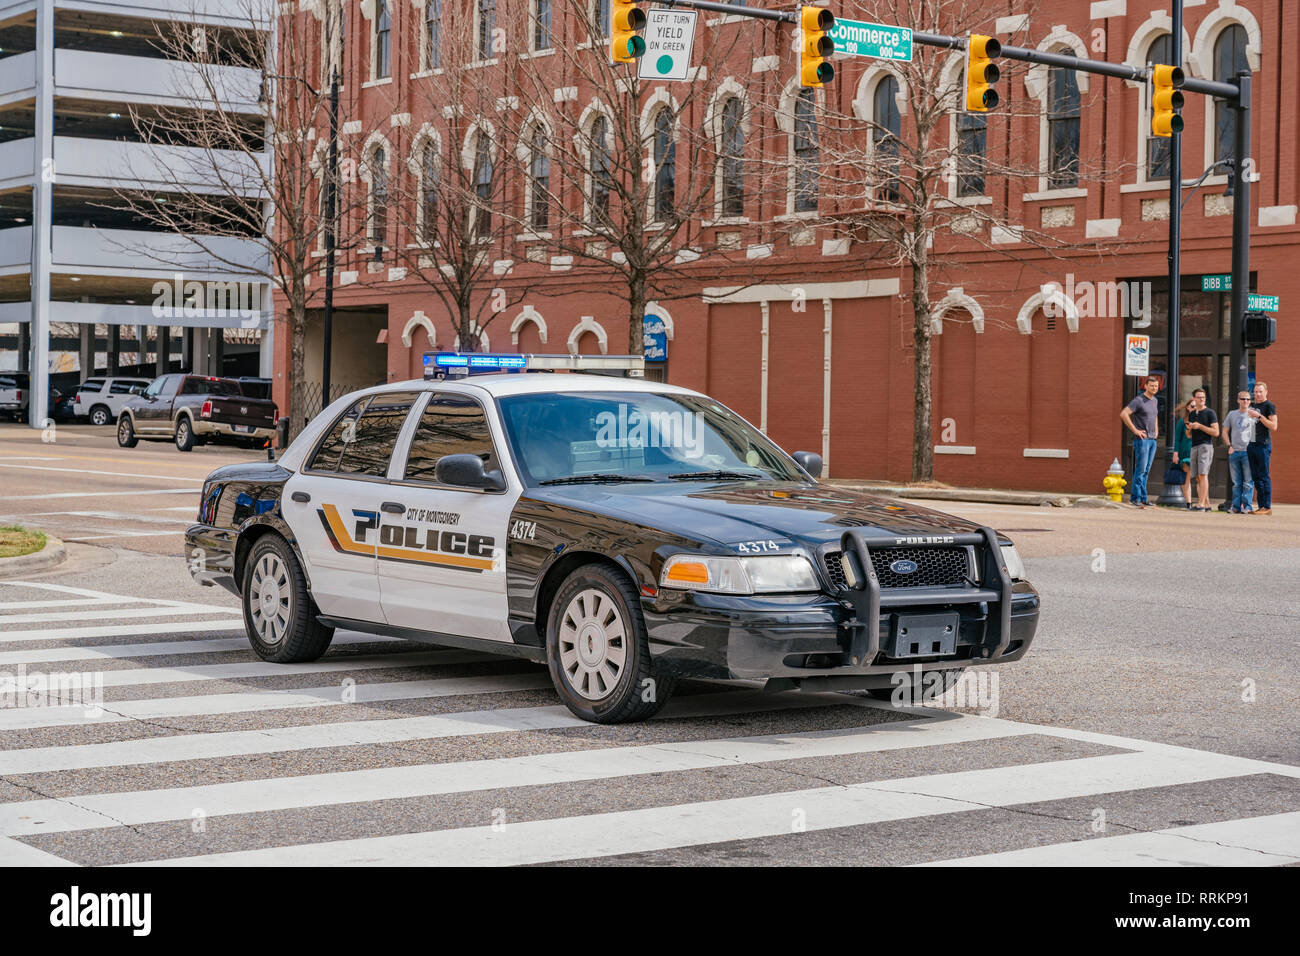 Schwarze und weiße Ford Crown Victoria Polizei Auto oder Cruiser oder streifenwagen von Montgomery Alabama Police Department in den USA. Stockfoto